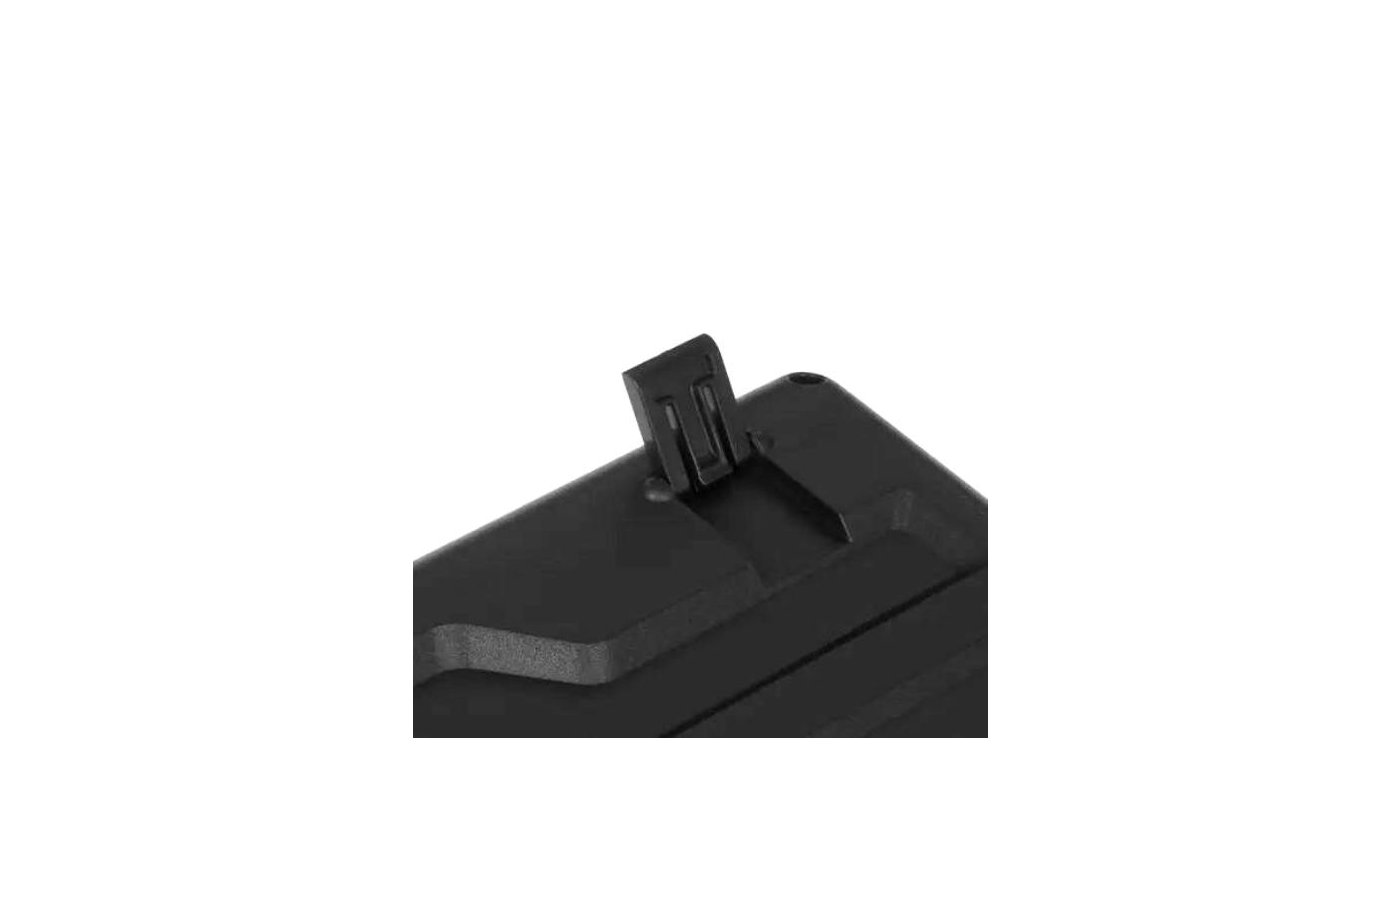 A4tech KK-3330s. Клавиатура + мышь a4tech KK-3330s клав:черный мышь:черный USB (KK-3330s USB (Black)). A4tech KK-3330. Kk 3330s